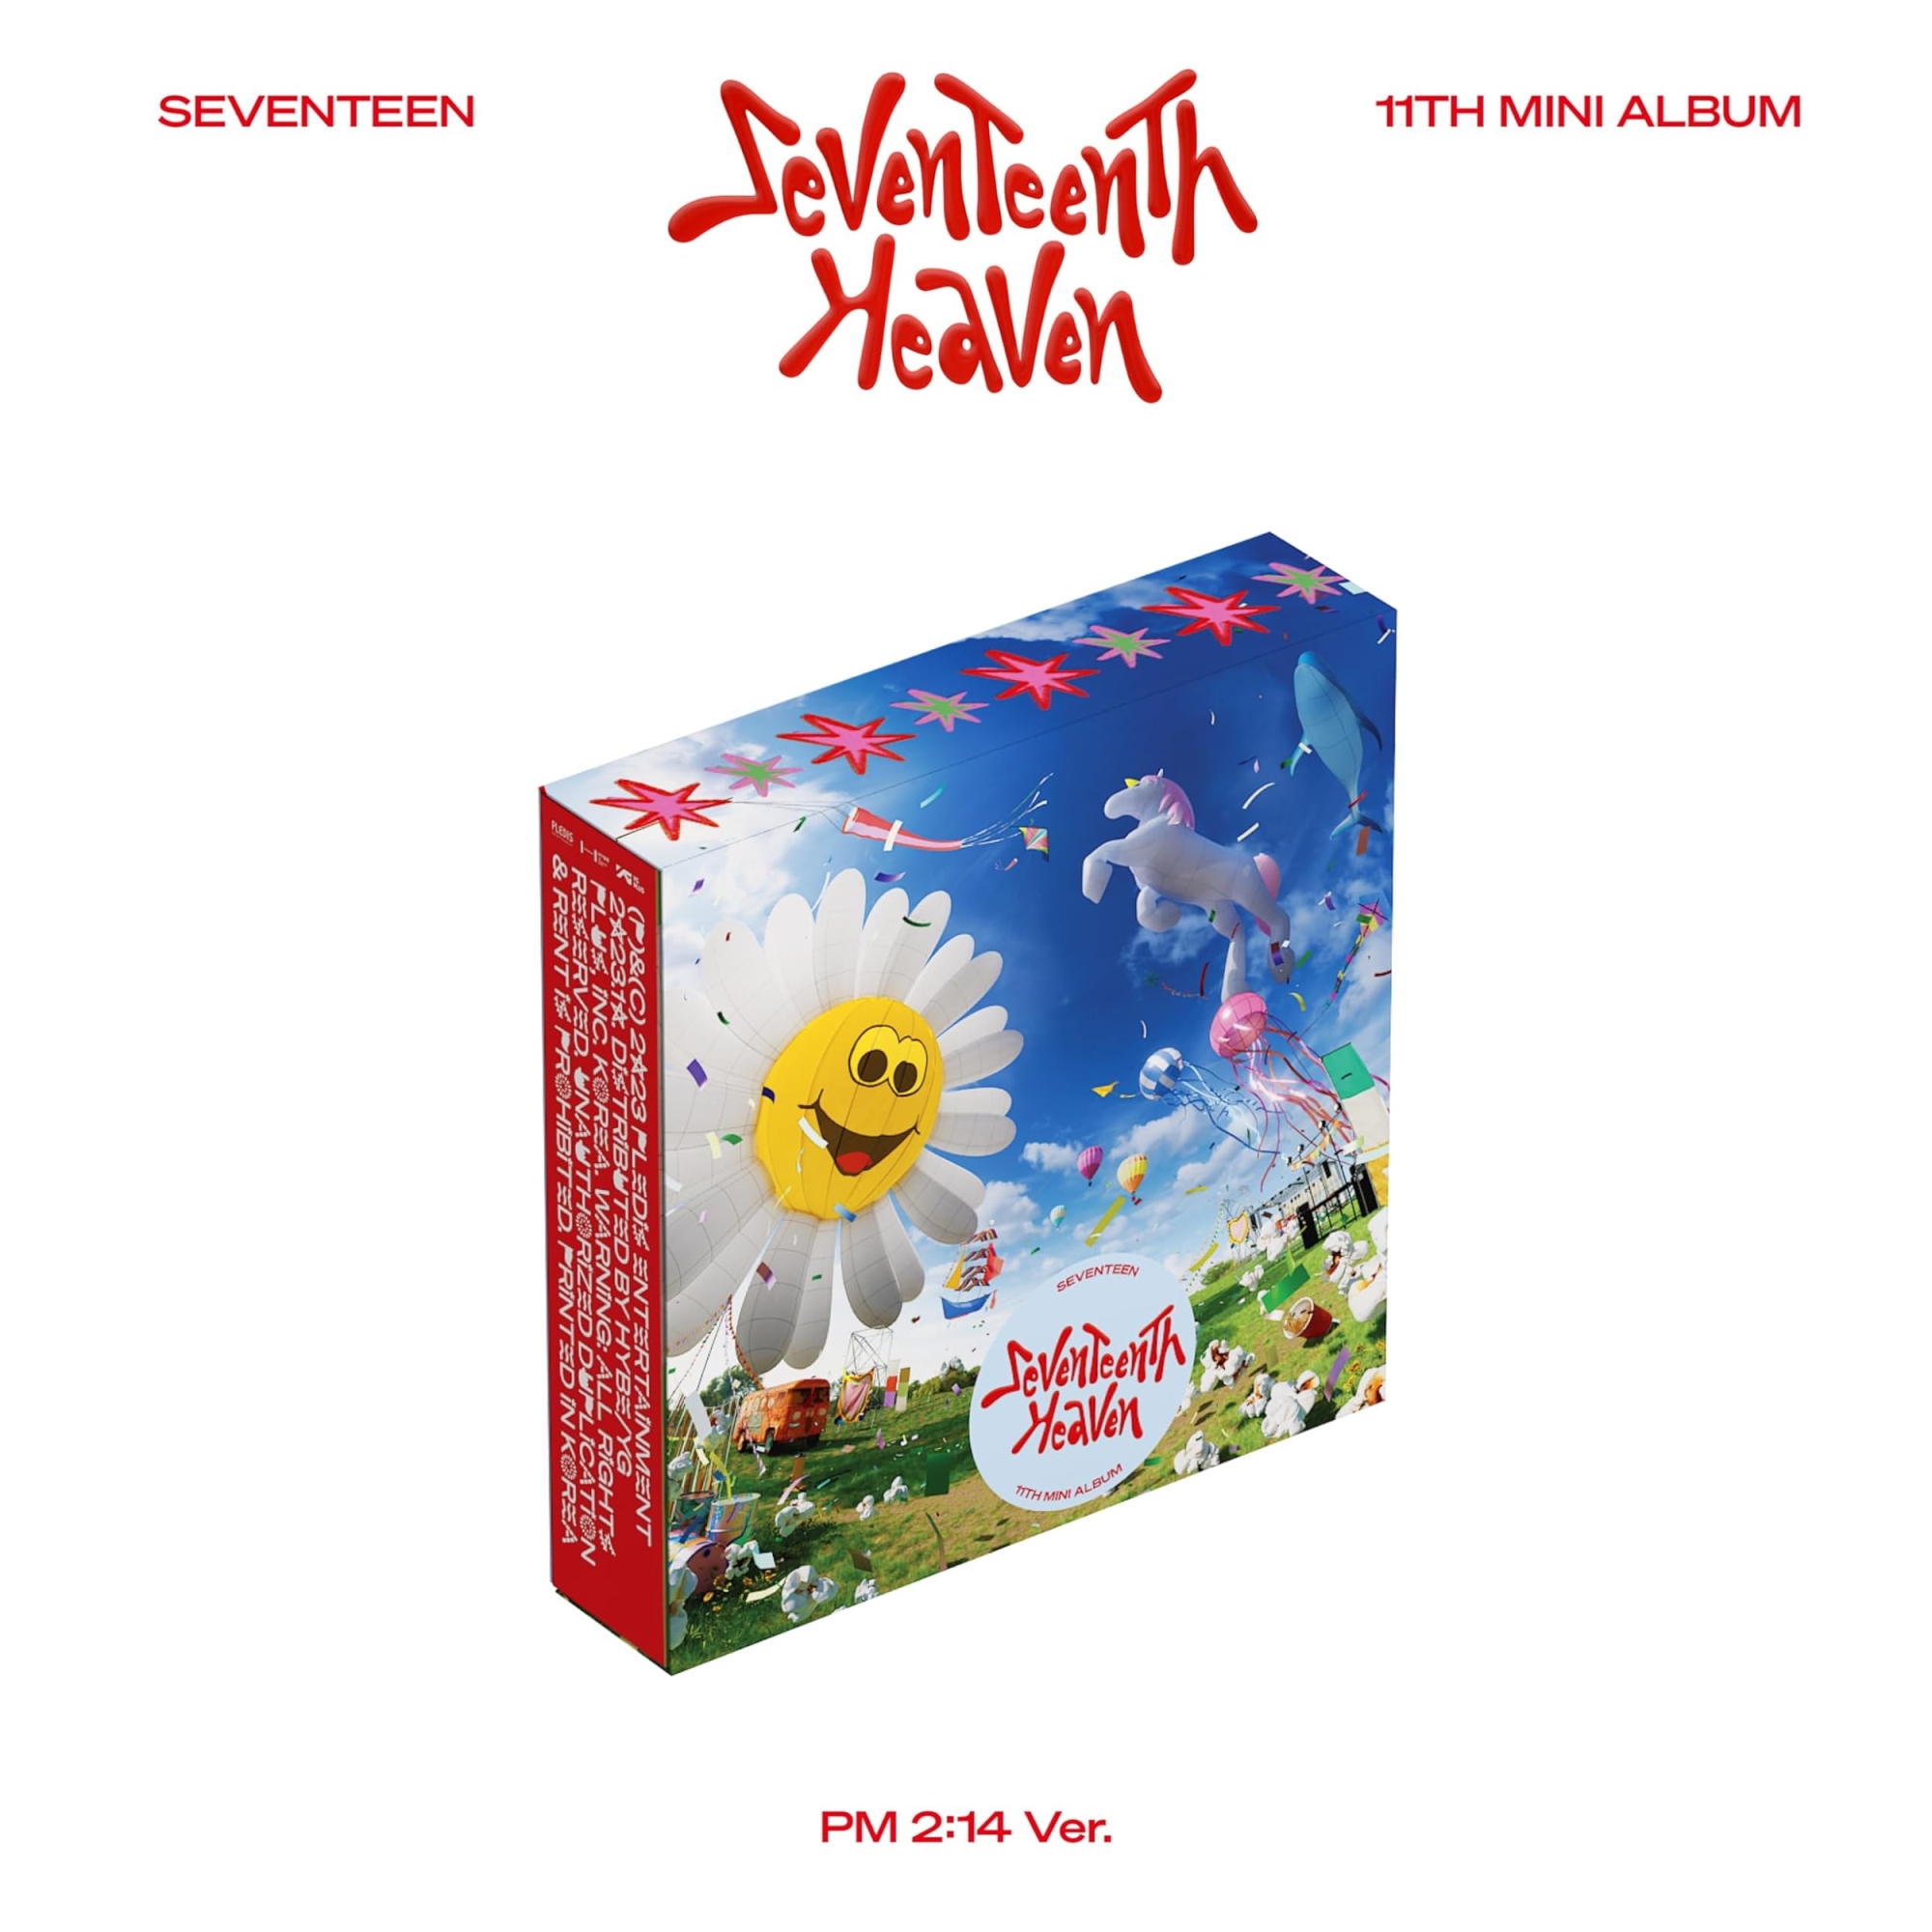 Audio Cd Seventeen - 11Th Mini Album Seventeenth Heaven Pm 2:14 Ver. NUOVO SIGILLATO EDIZIONE DEL SUBITO DISPONIBILE